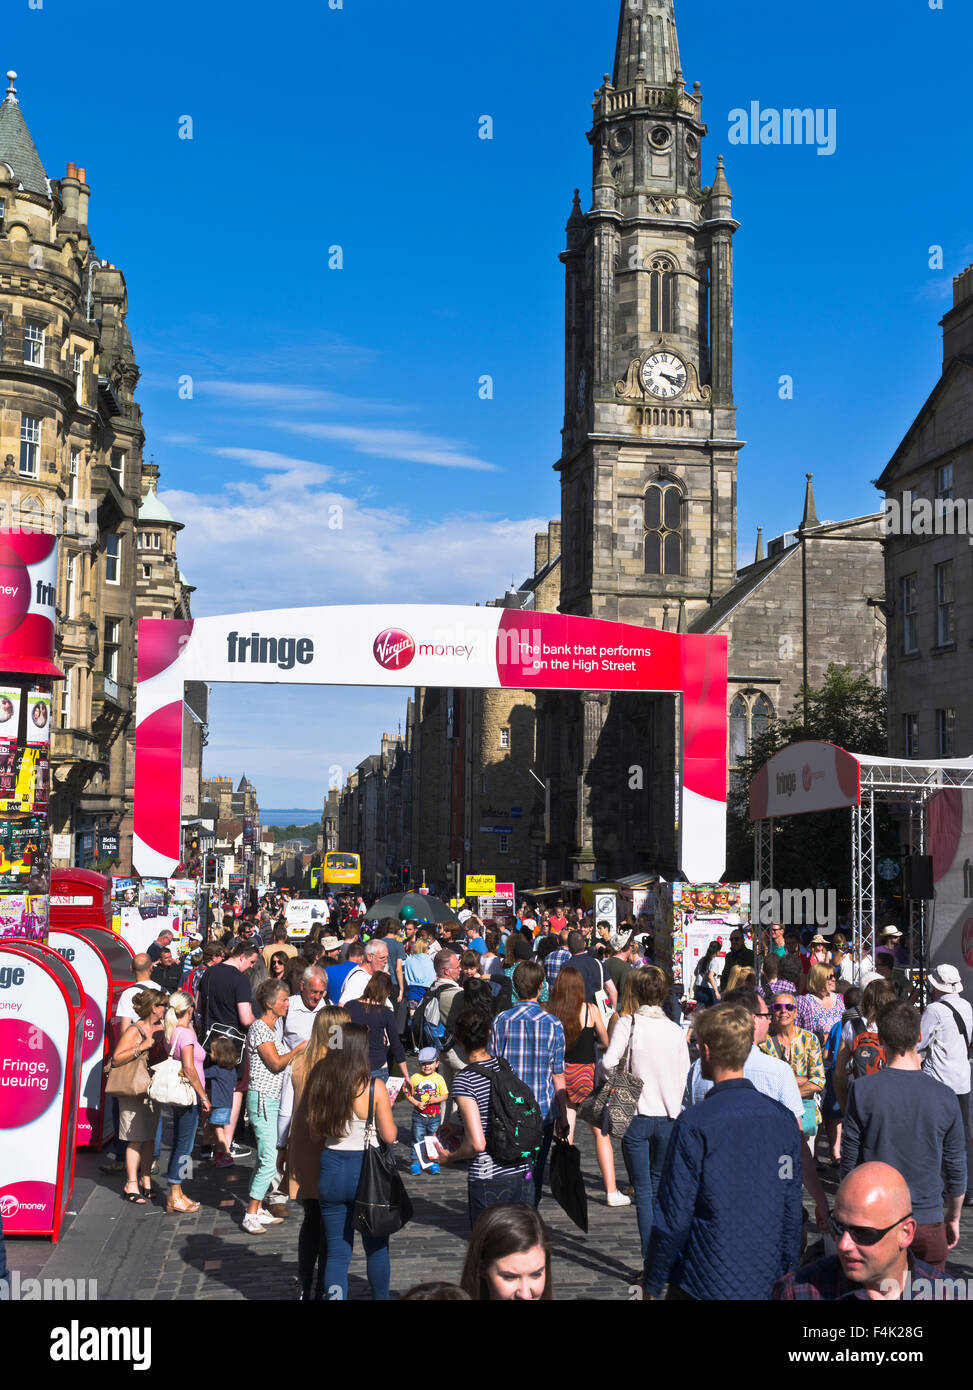 dh Edinburgh Fringe Festival ROYAL MILE EDIMBURGO ESCOCIA Gente turística verano sol calle muchedumbre ciudad muchedumbres ocupadas atracción de los turistas Foto de stock